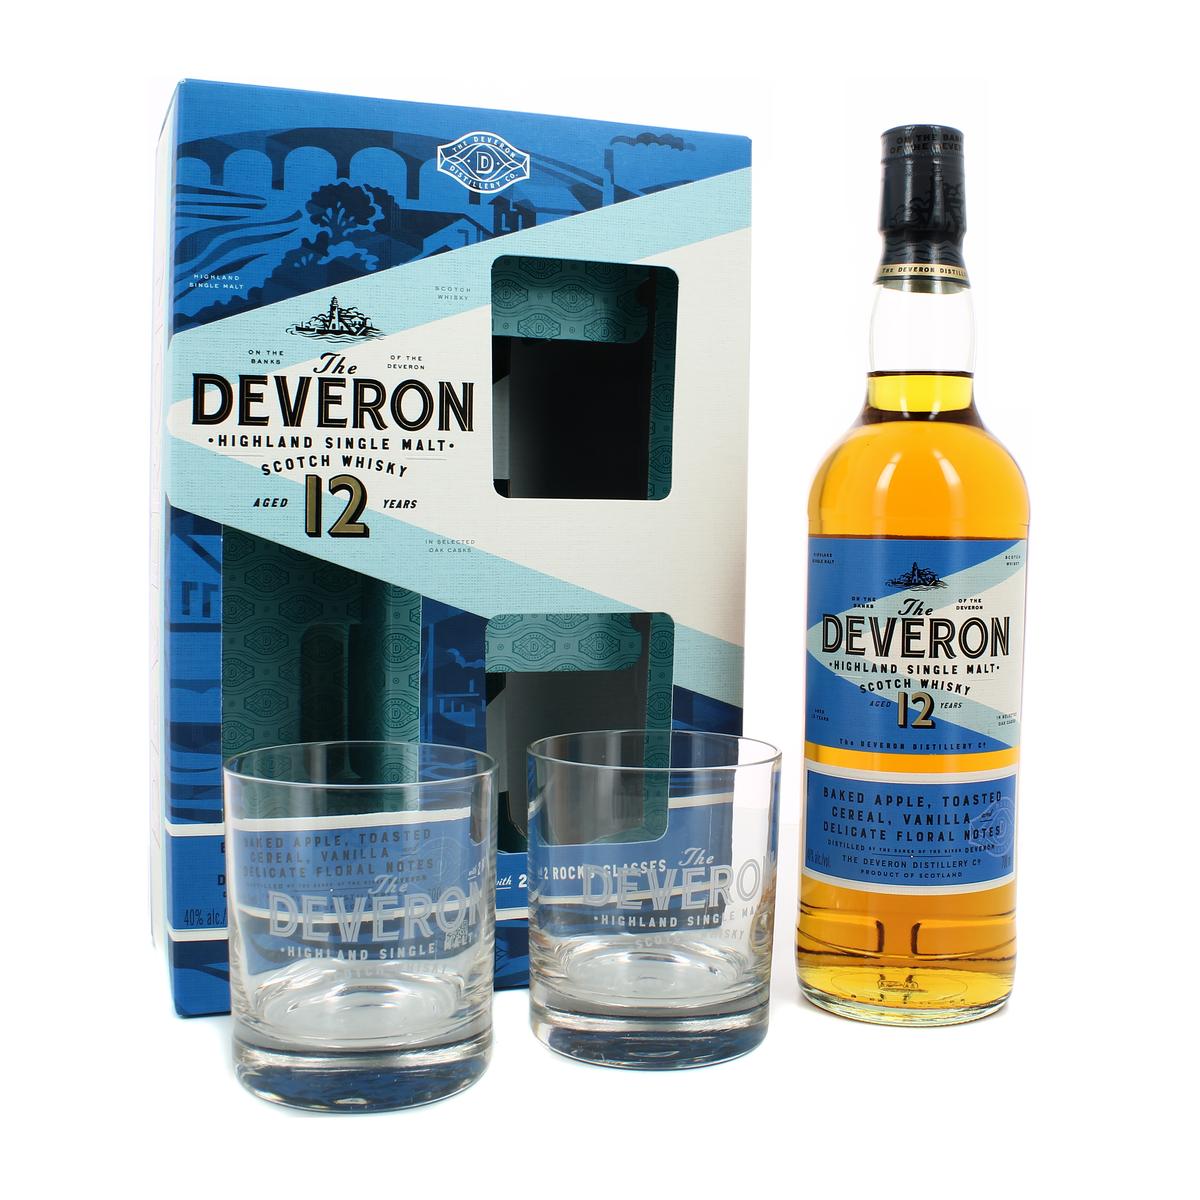 Acheter The Deveron Scotch whisky single malt 40° coffret festif, 70cl